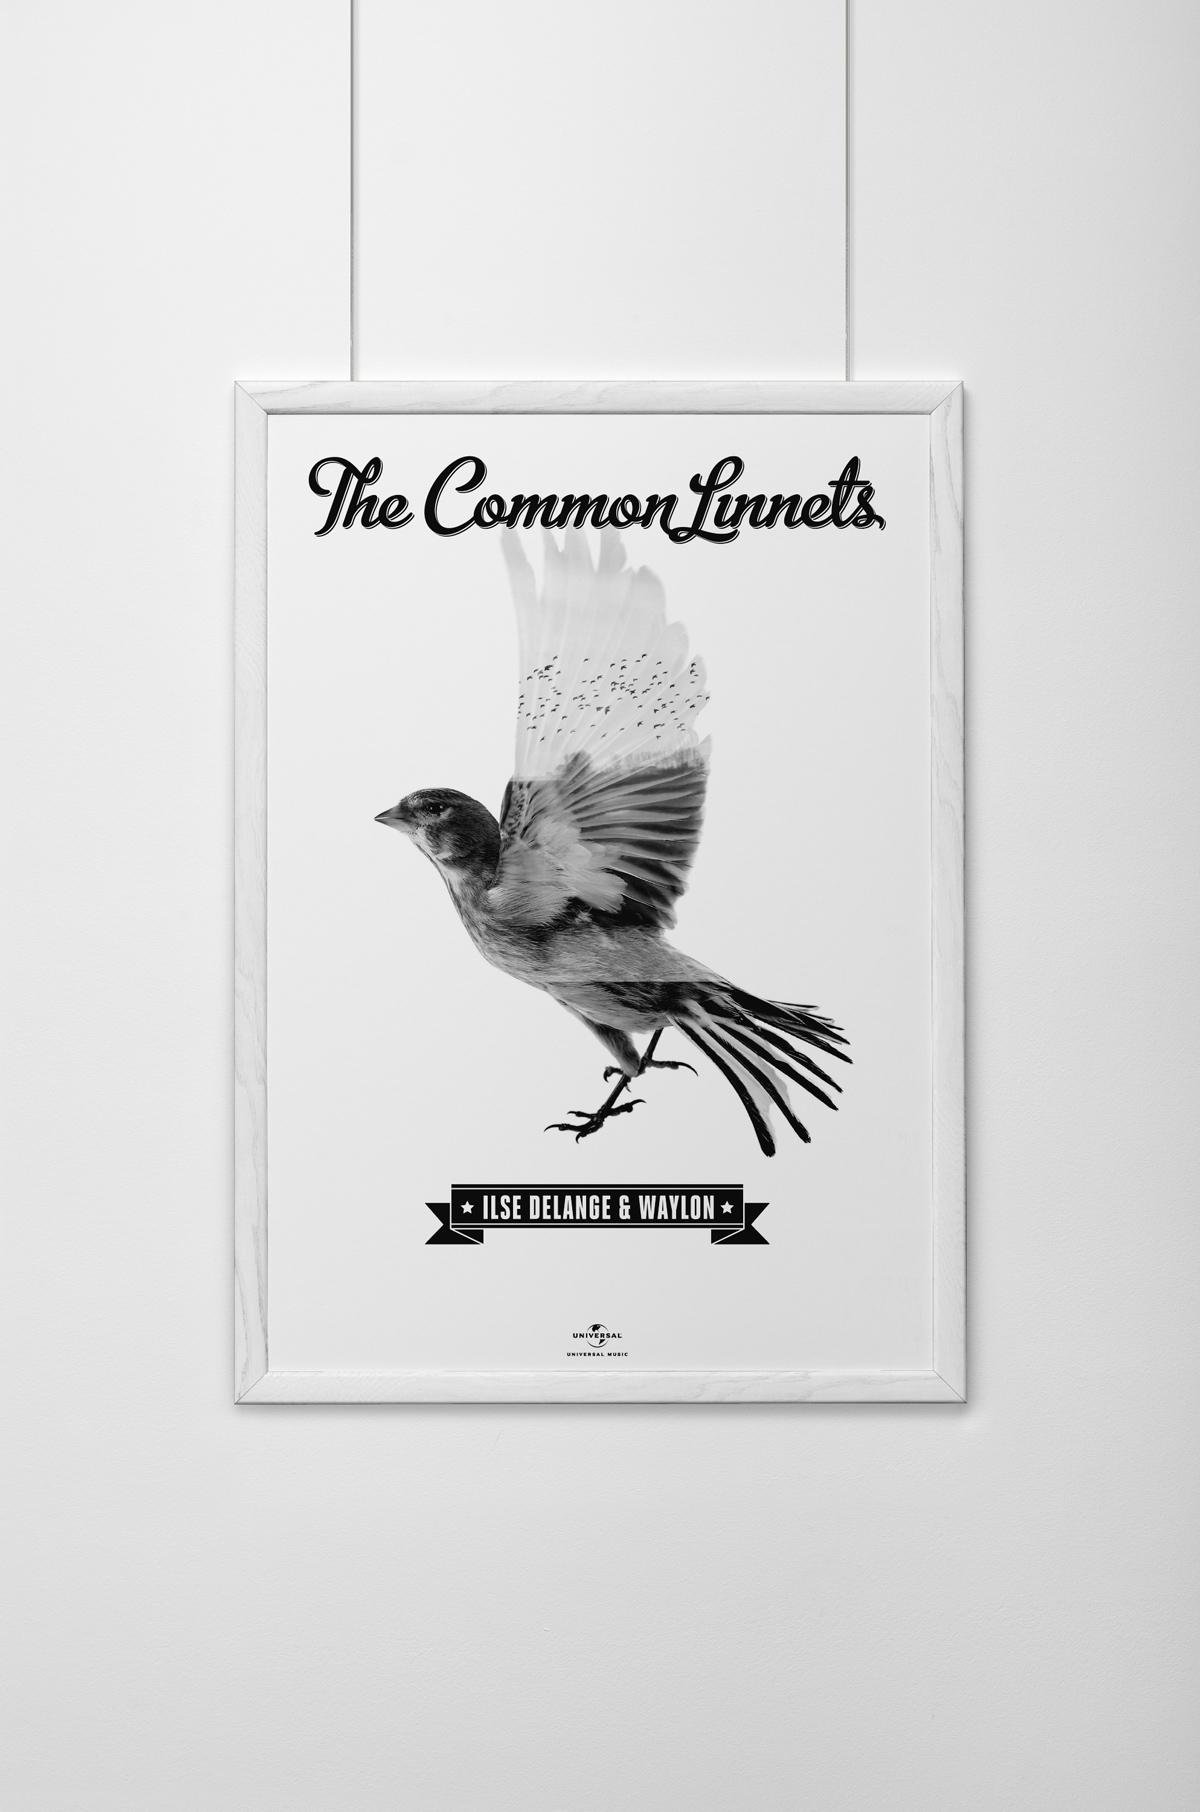 the common linnets bird birds CD cover artwork Album cd artwork design Ilse DeLange waylon eurovision song contest dutch The Netherlands rens dekker name